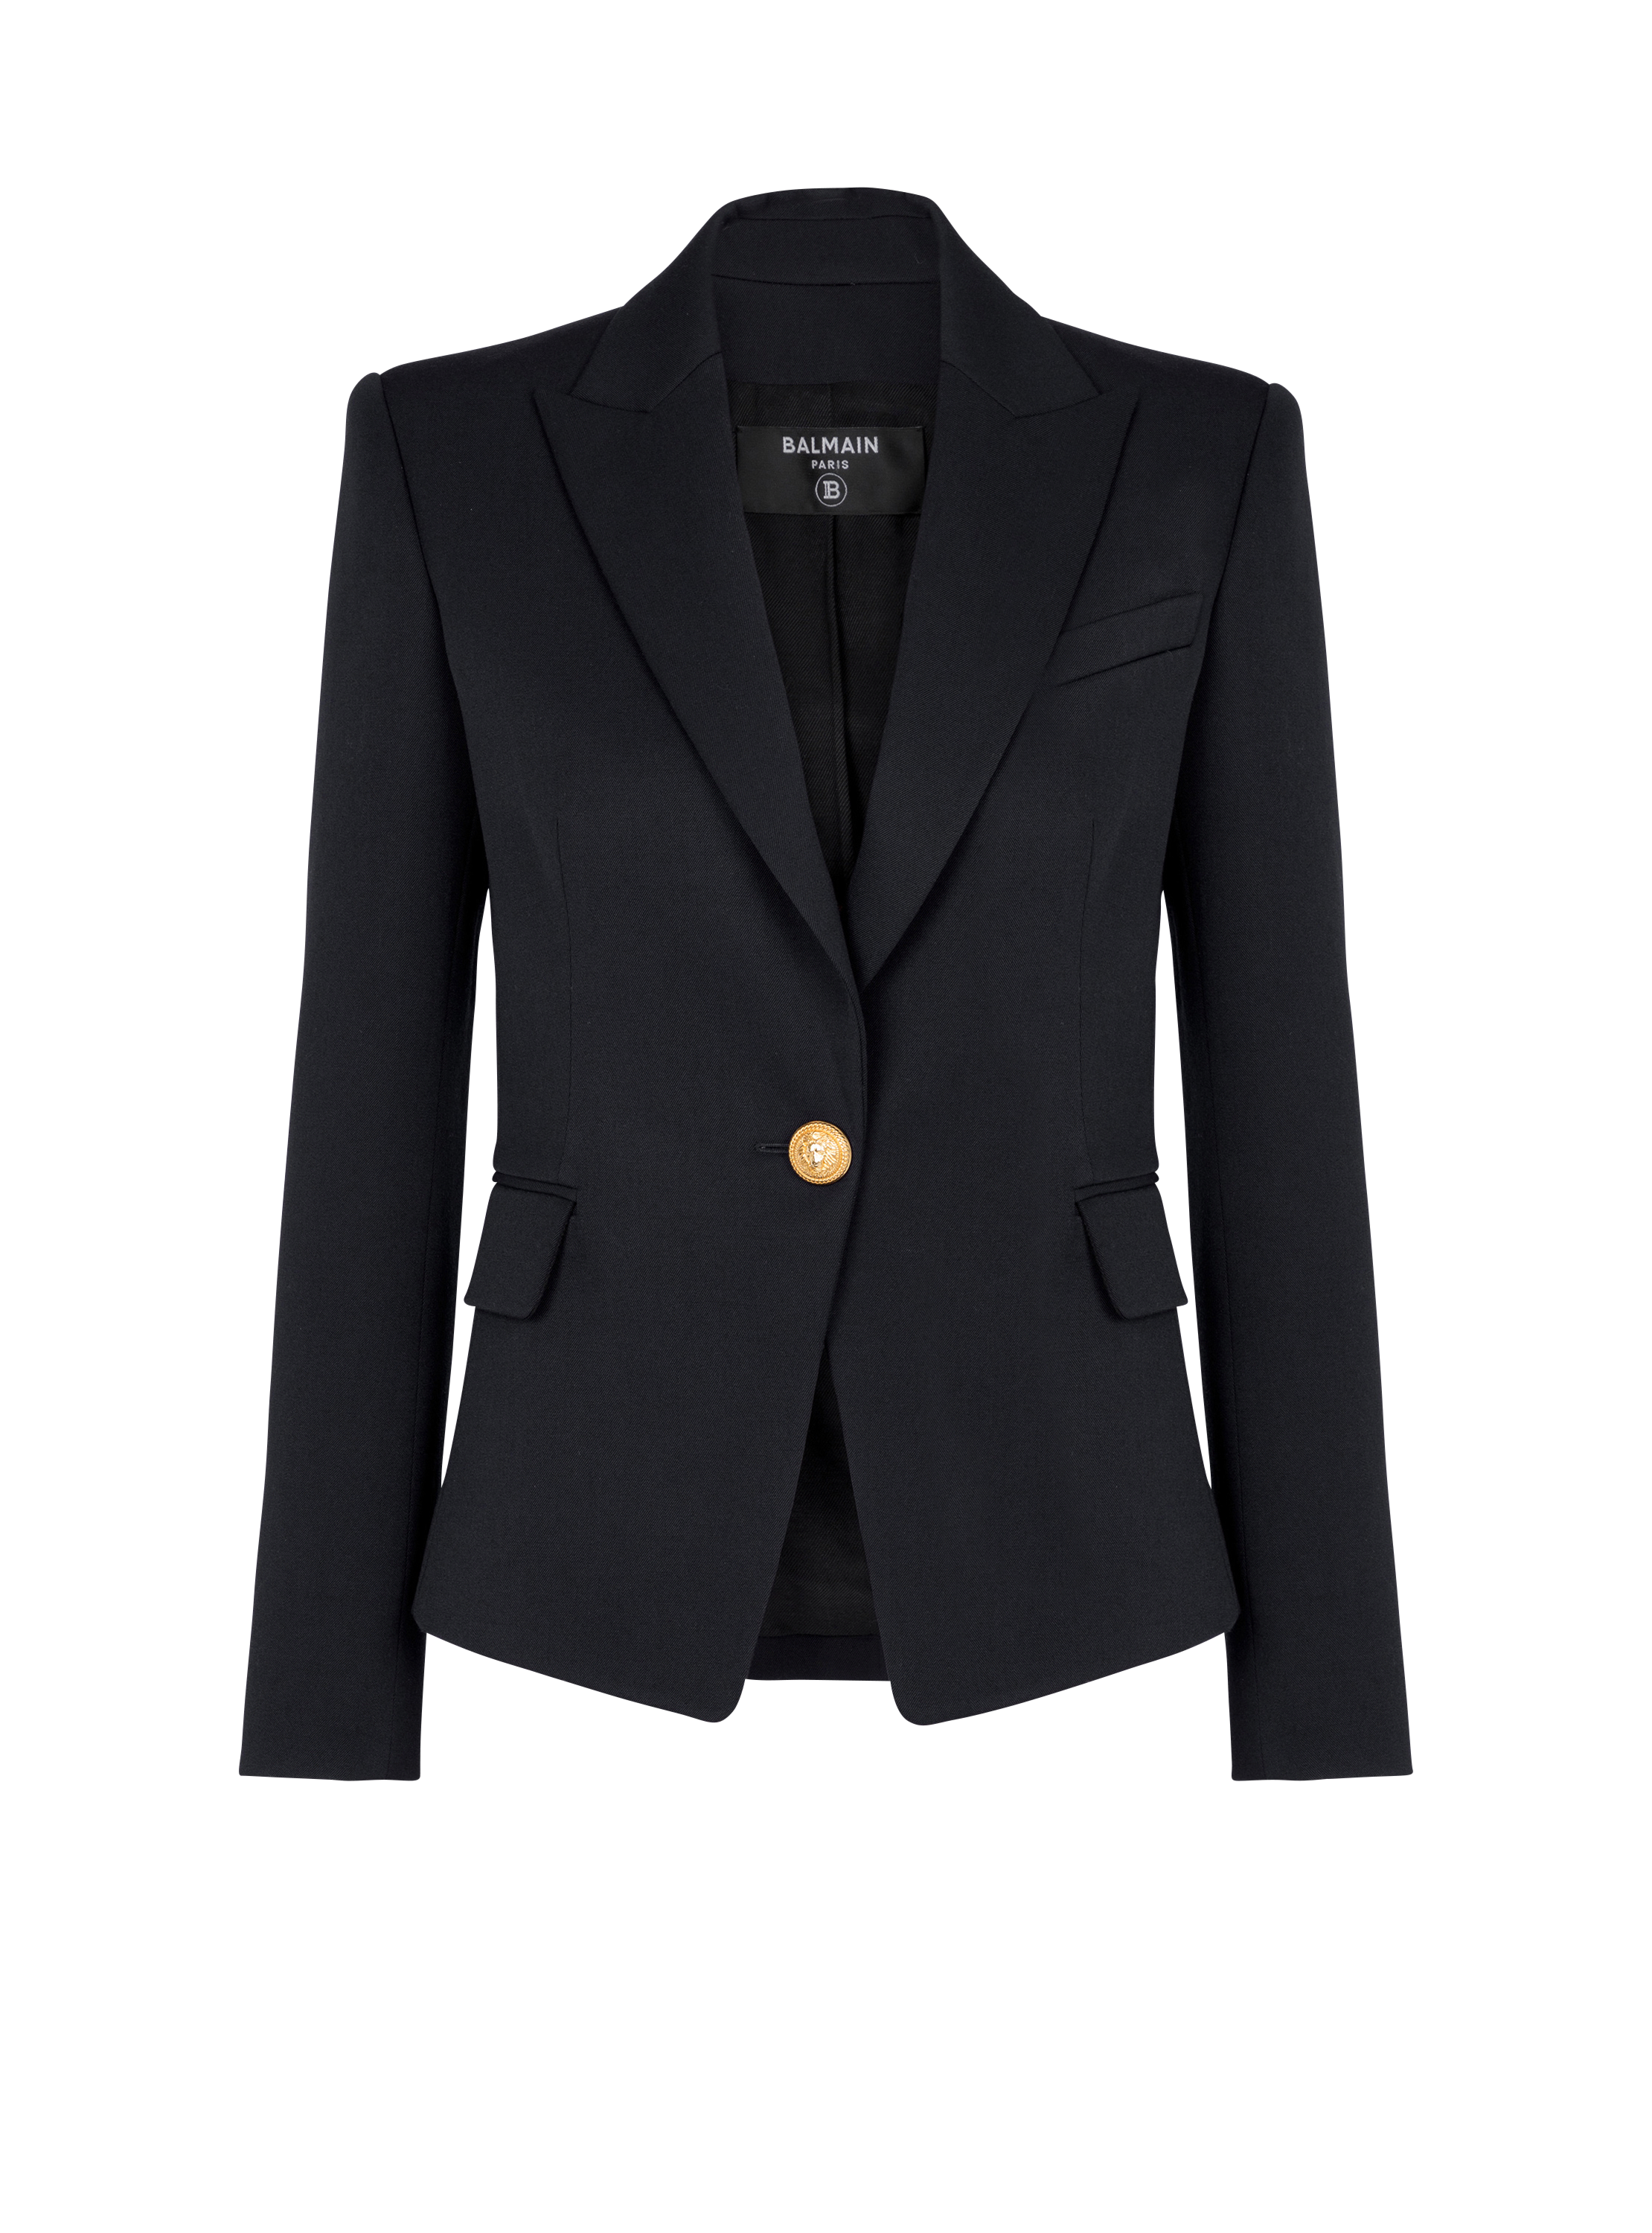 One-button wool blazer, black, hi-res